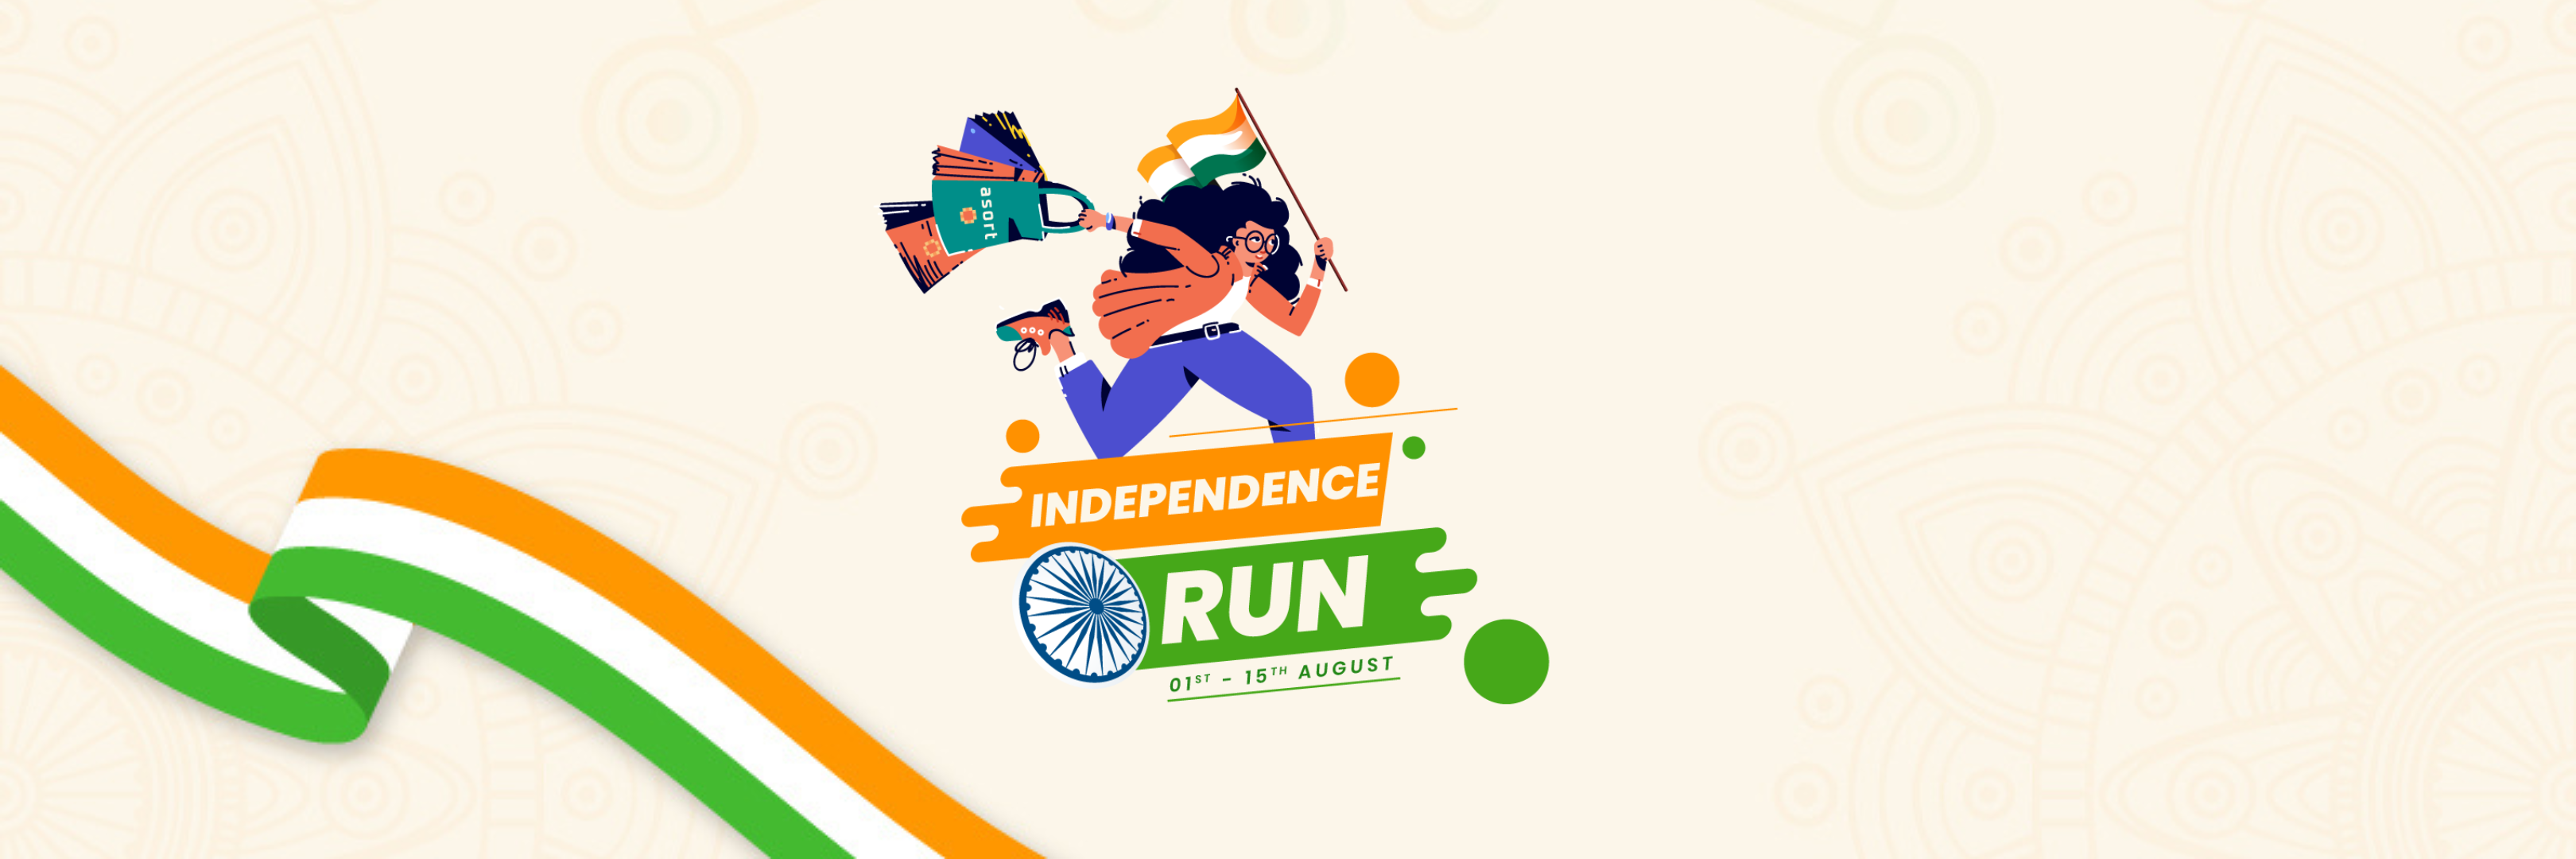 Independence Run